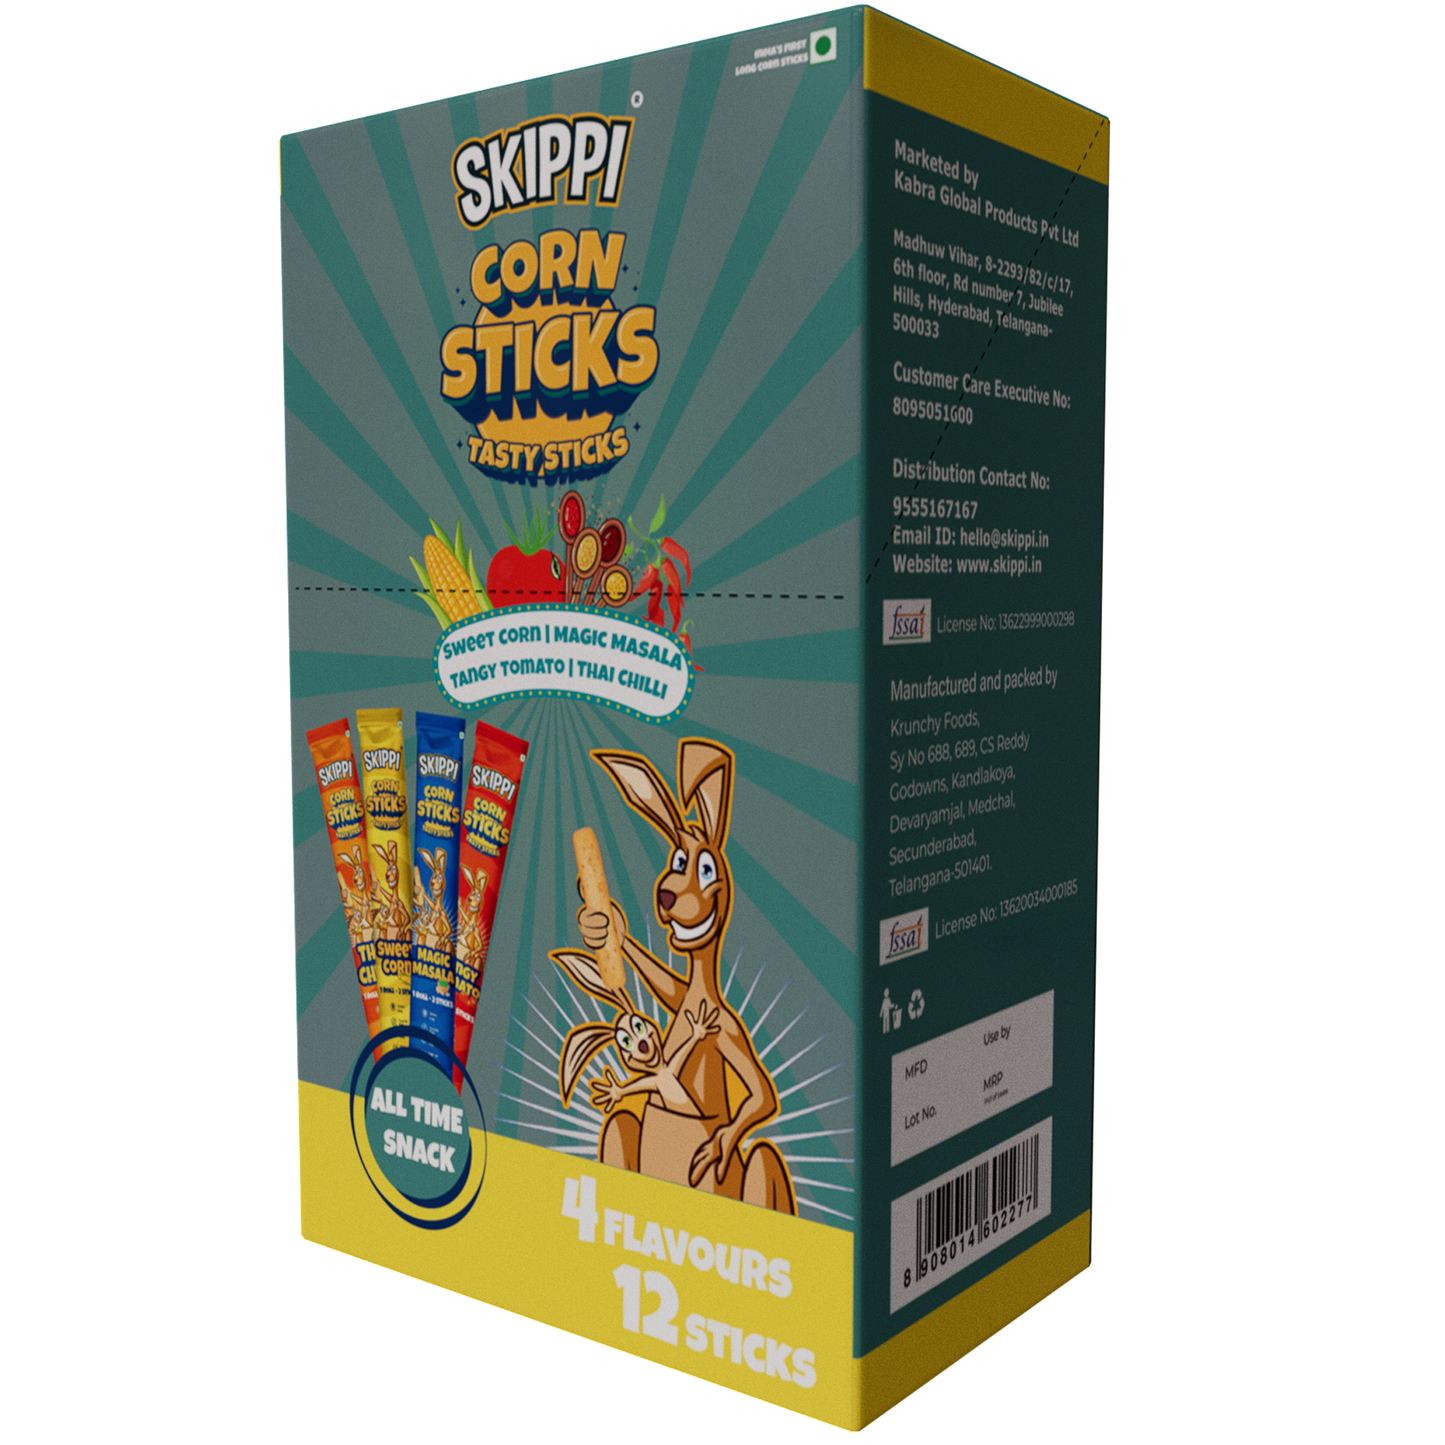 (12 Sticks)All Time Snack of Skippi Tasty Corn Sticks, 4 flavors (Sweet Corn, Magic Masala, Tangy Tomato & Thai Chilli), 144g (12g x 12 Rolls) - Skippi